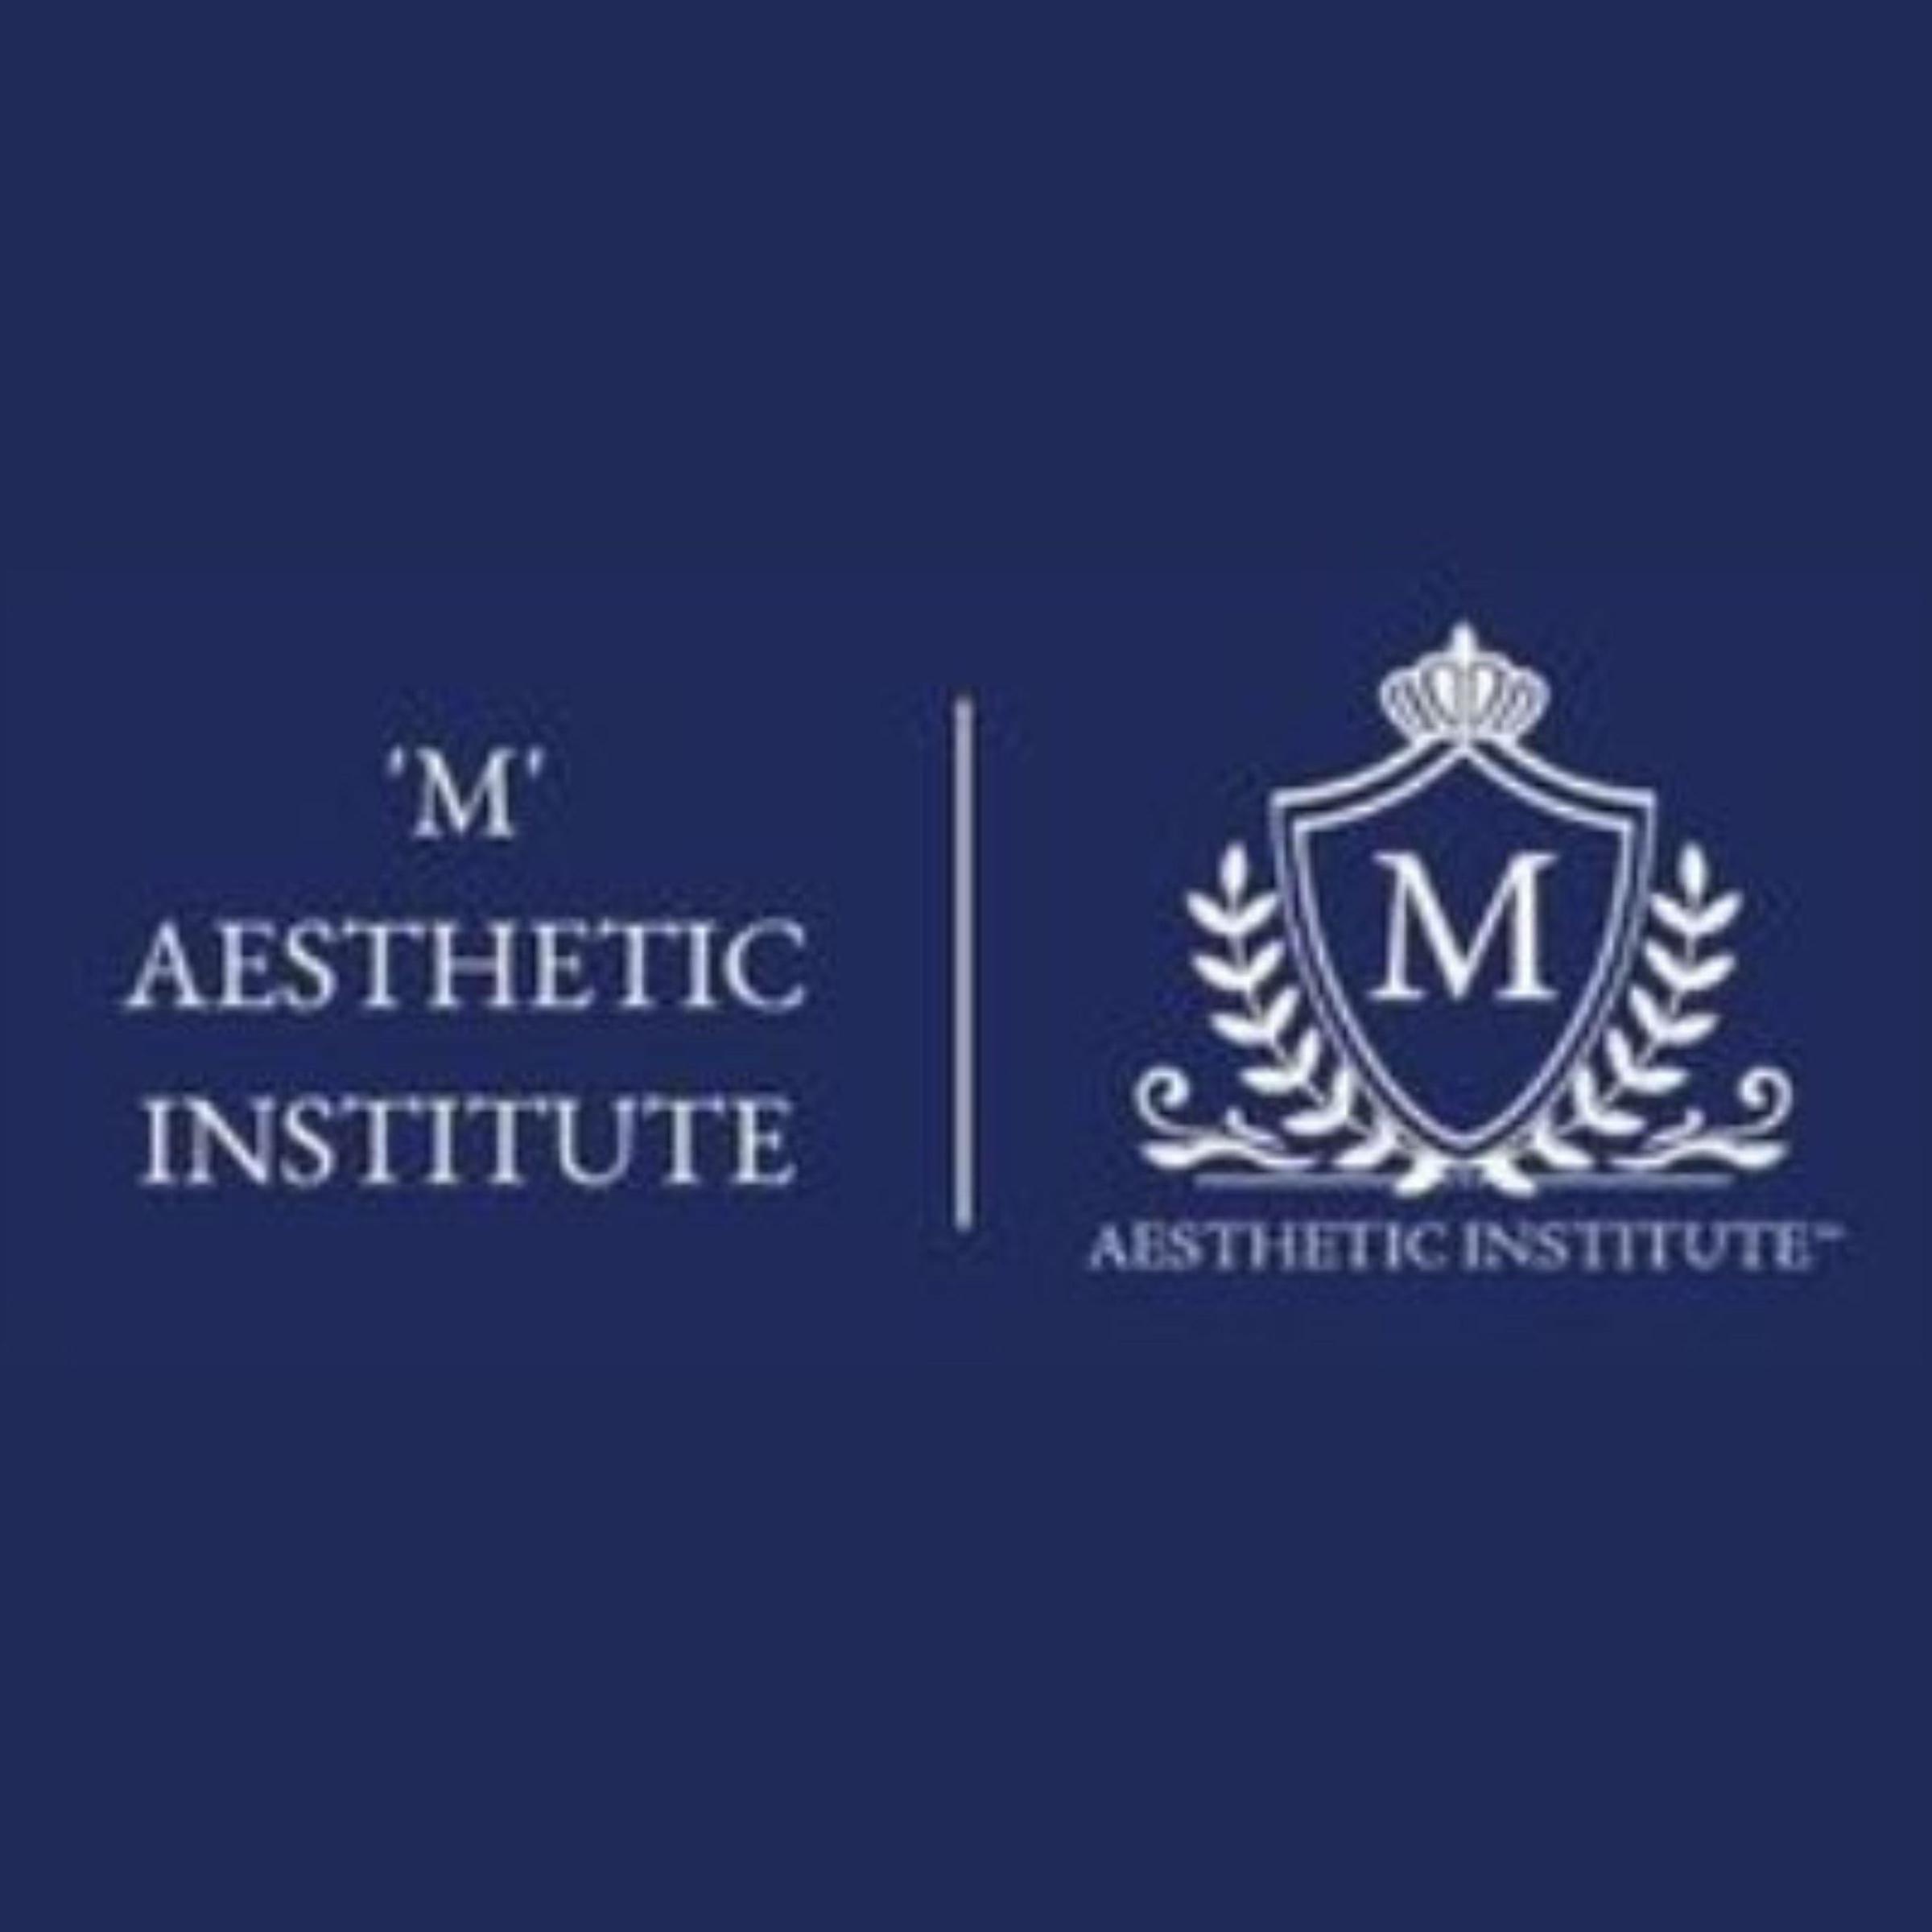 Maesthetic Institute